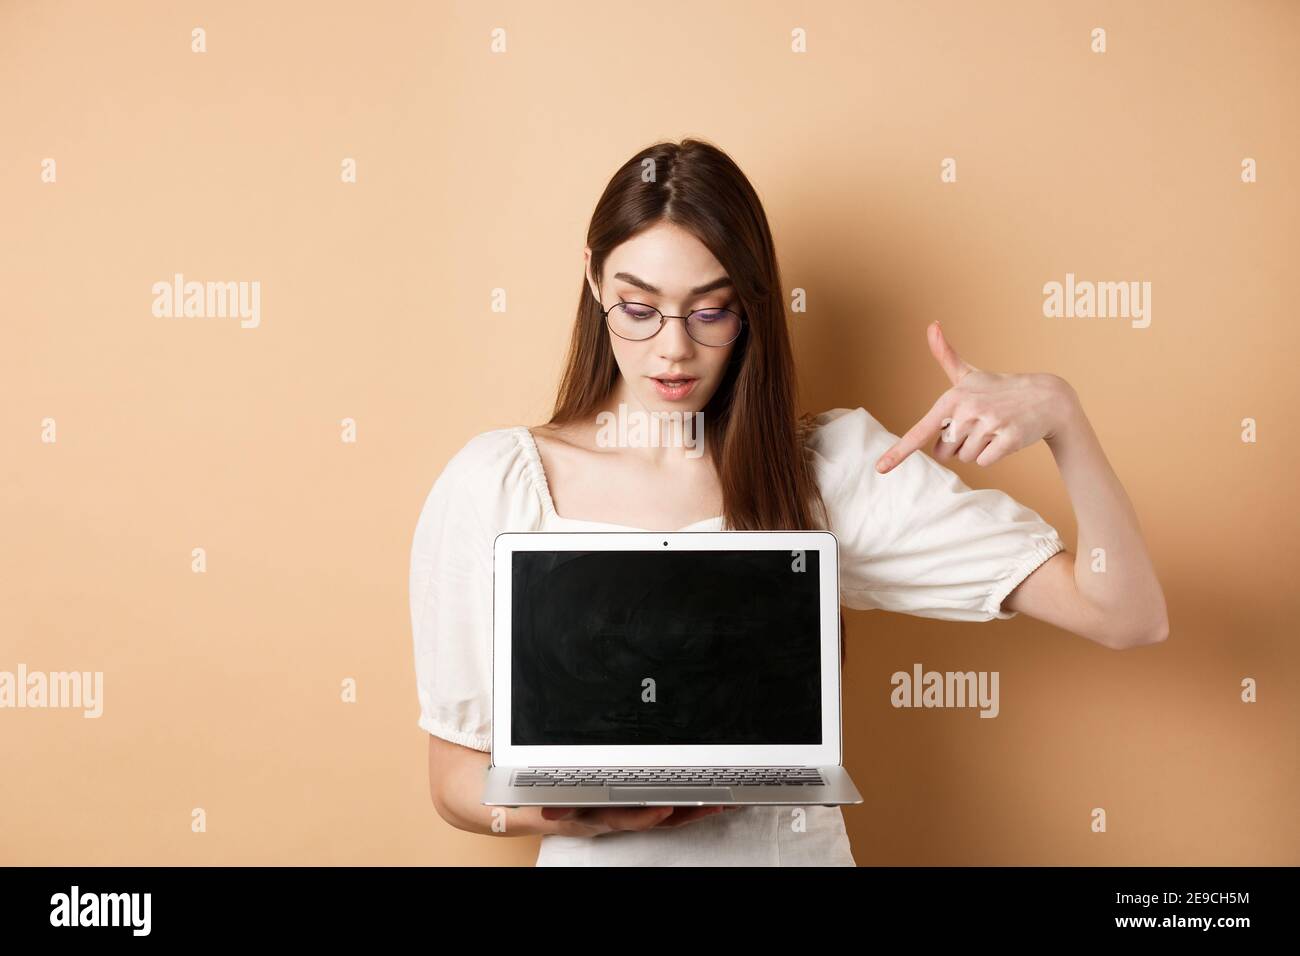 Neugieriges Mädchen in einer Brille zeigt auf Laptop-Bildschirm, überprüfen  Sie Online-Deal, zeigen Projekt auf Computer, auf beigem Hintergrund stehen  Stockfotografie - Alamy